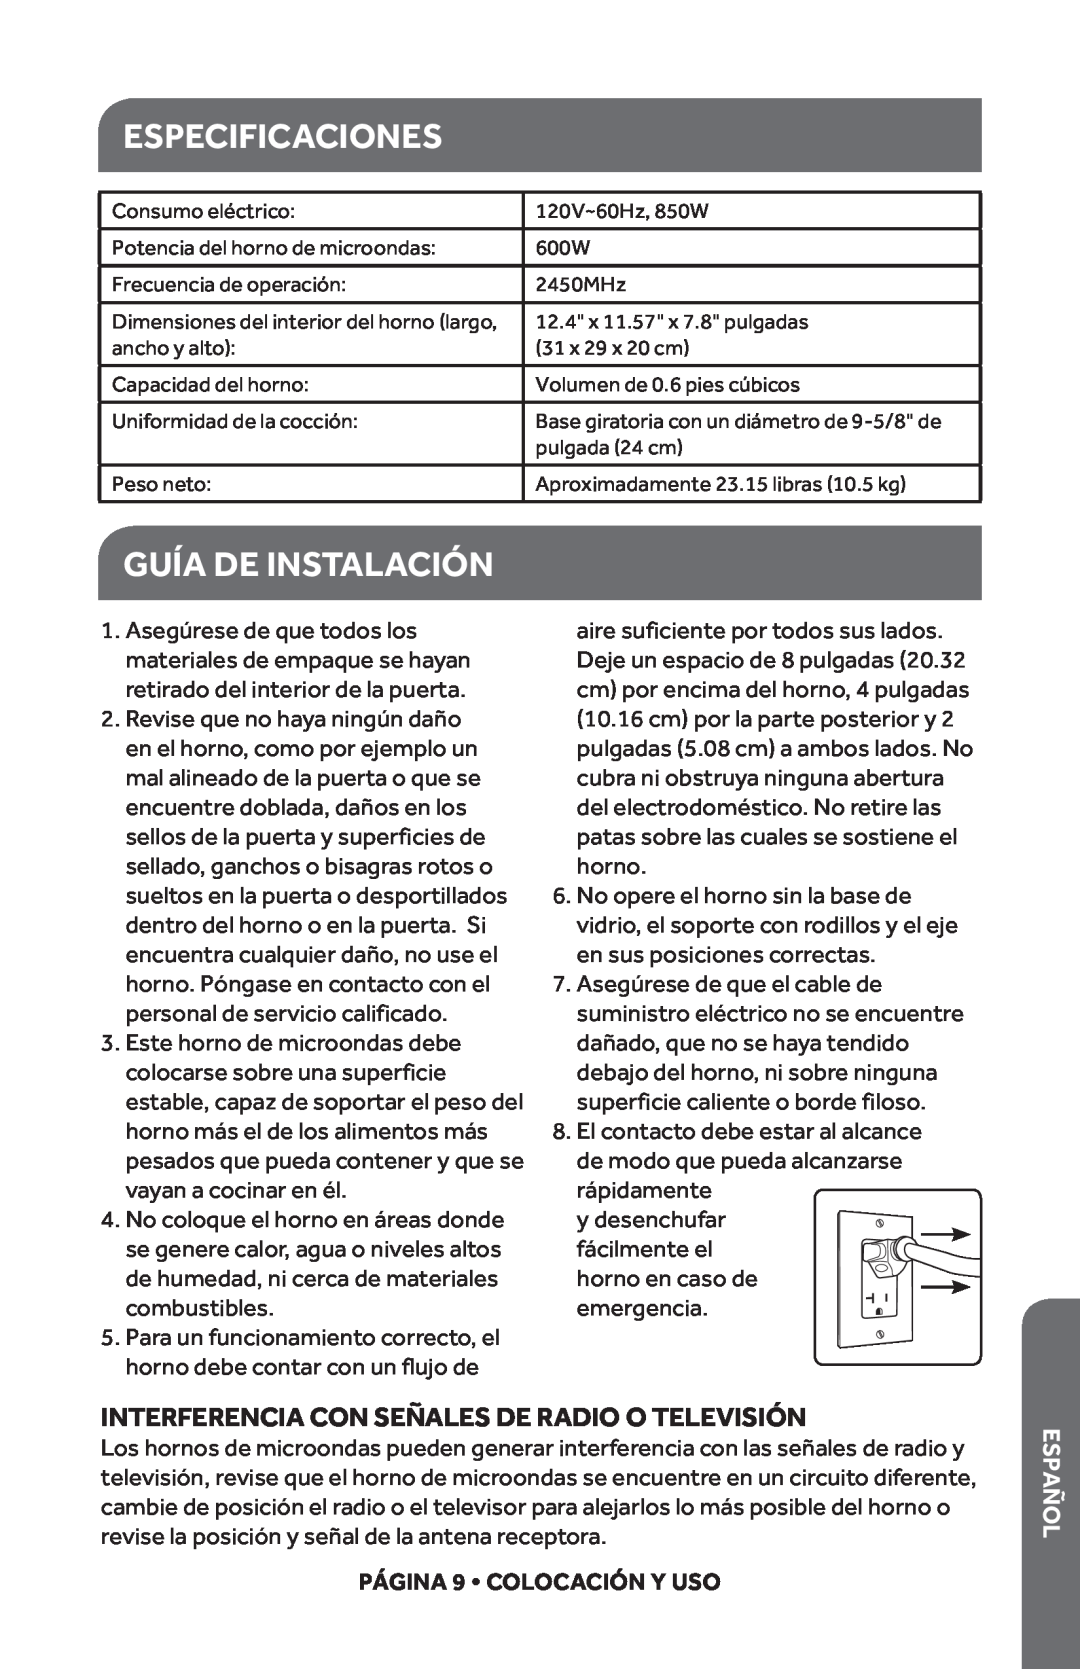 Haier HMC610BEBB Especificaciones, Guía De Instalación, Interferencia Con Señales De Radio O Televisión, Español 